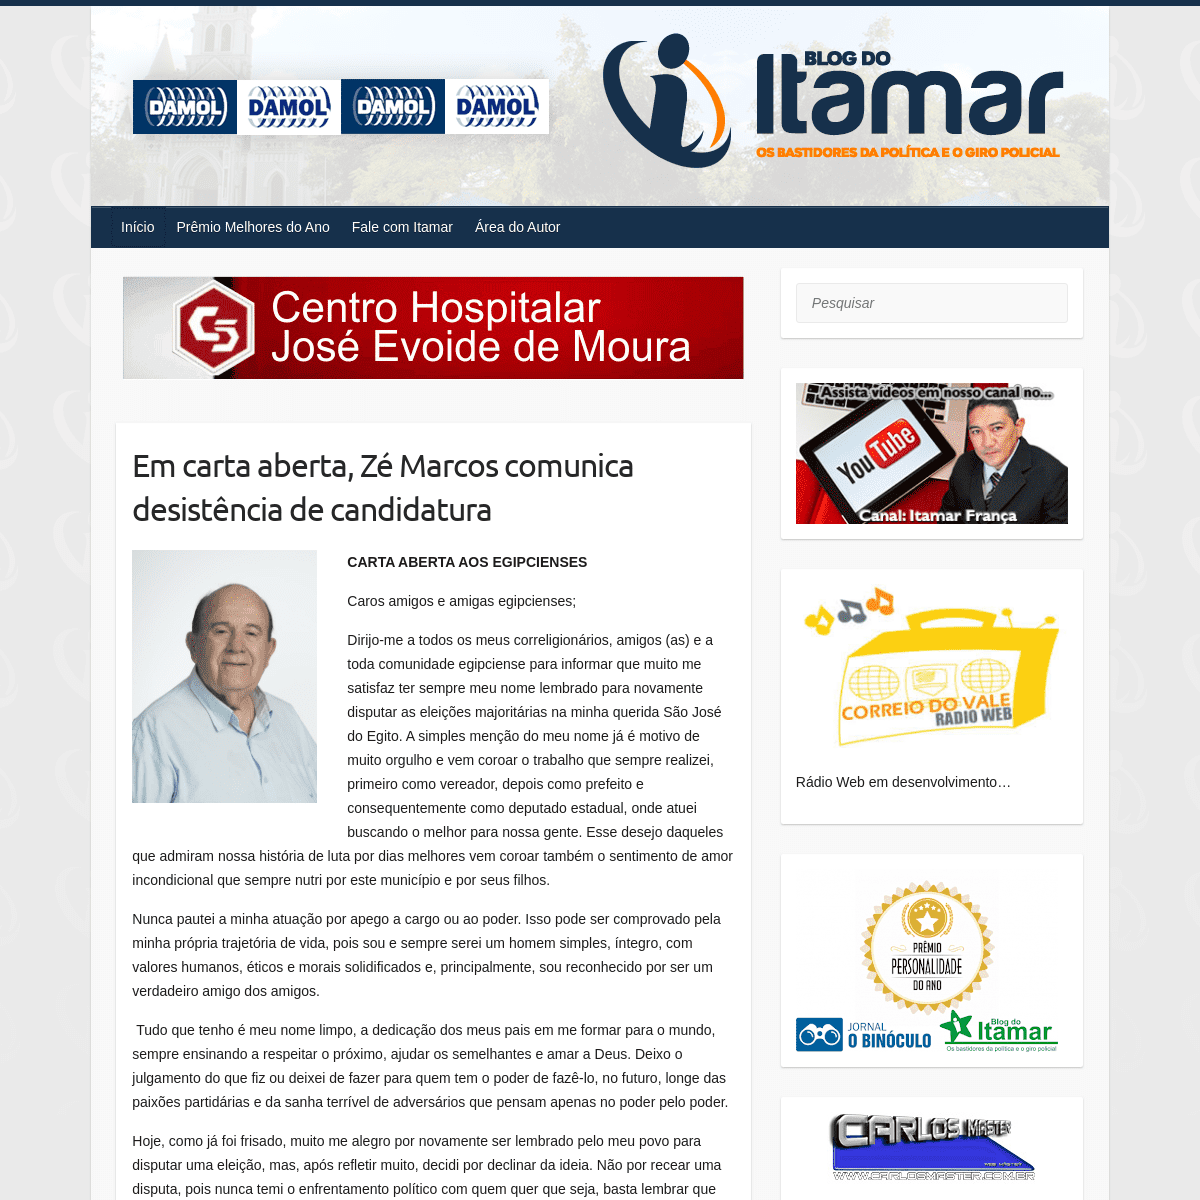 A complete backup of blogdoitamar.com.br